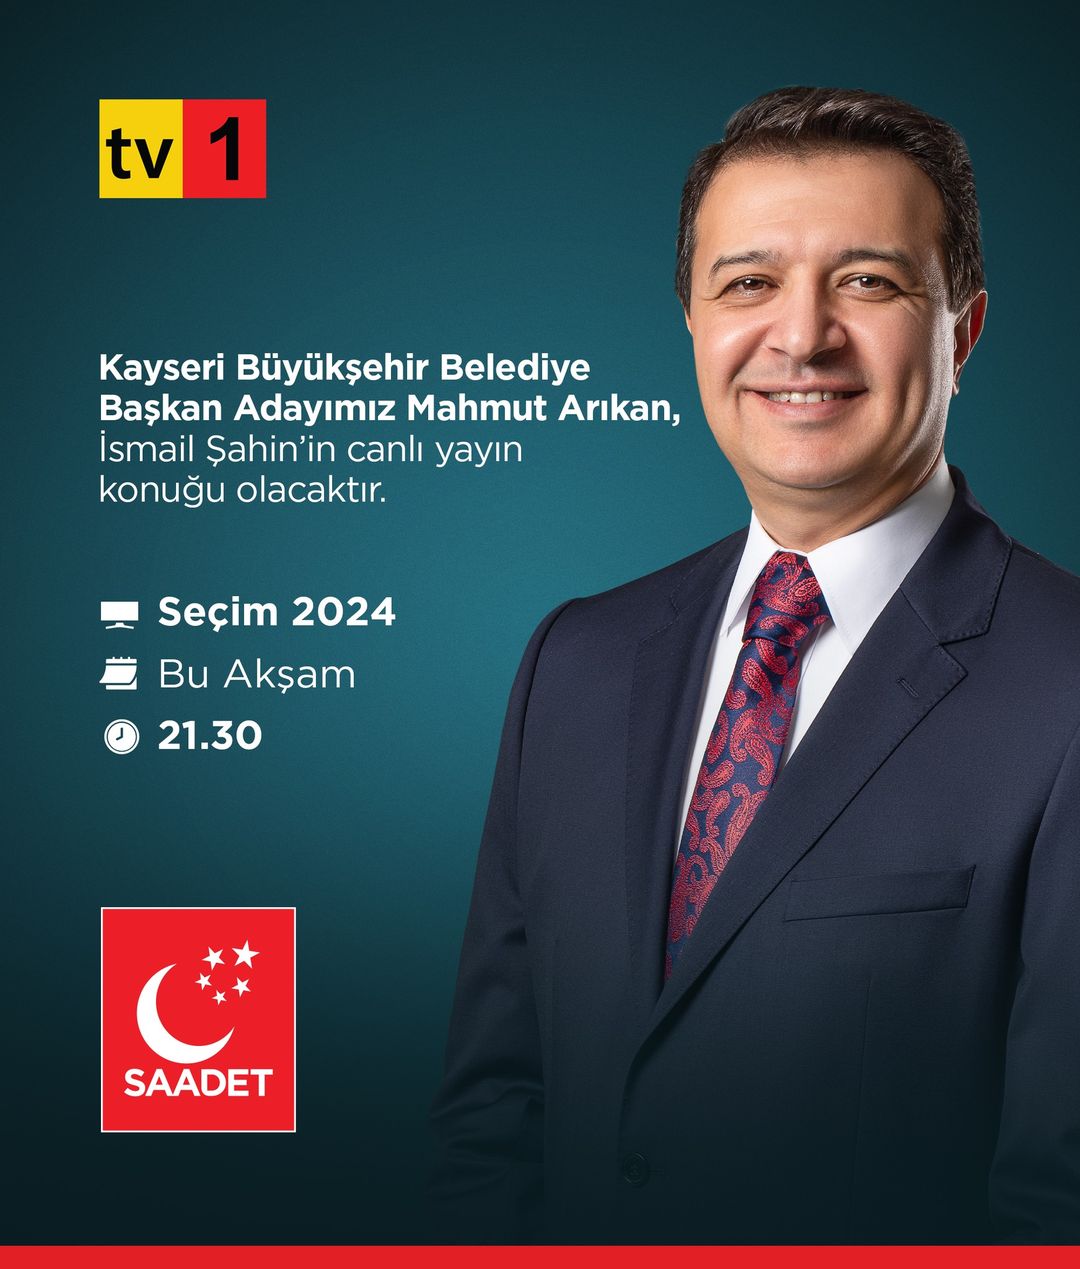 Saadet Partisi adayı Mahmut Arıkan, Kayseri'deki politikalarını ve vizyonunu paylaşmak için televizyon programına konuk olacak.